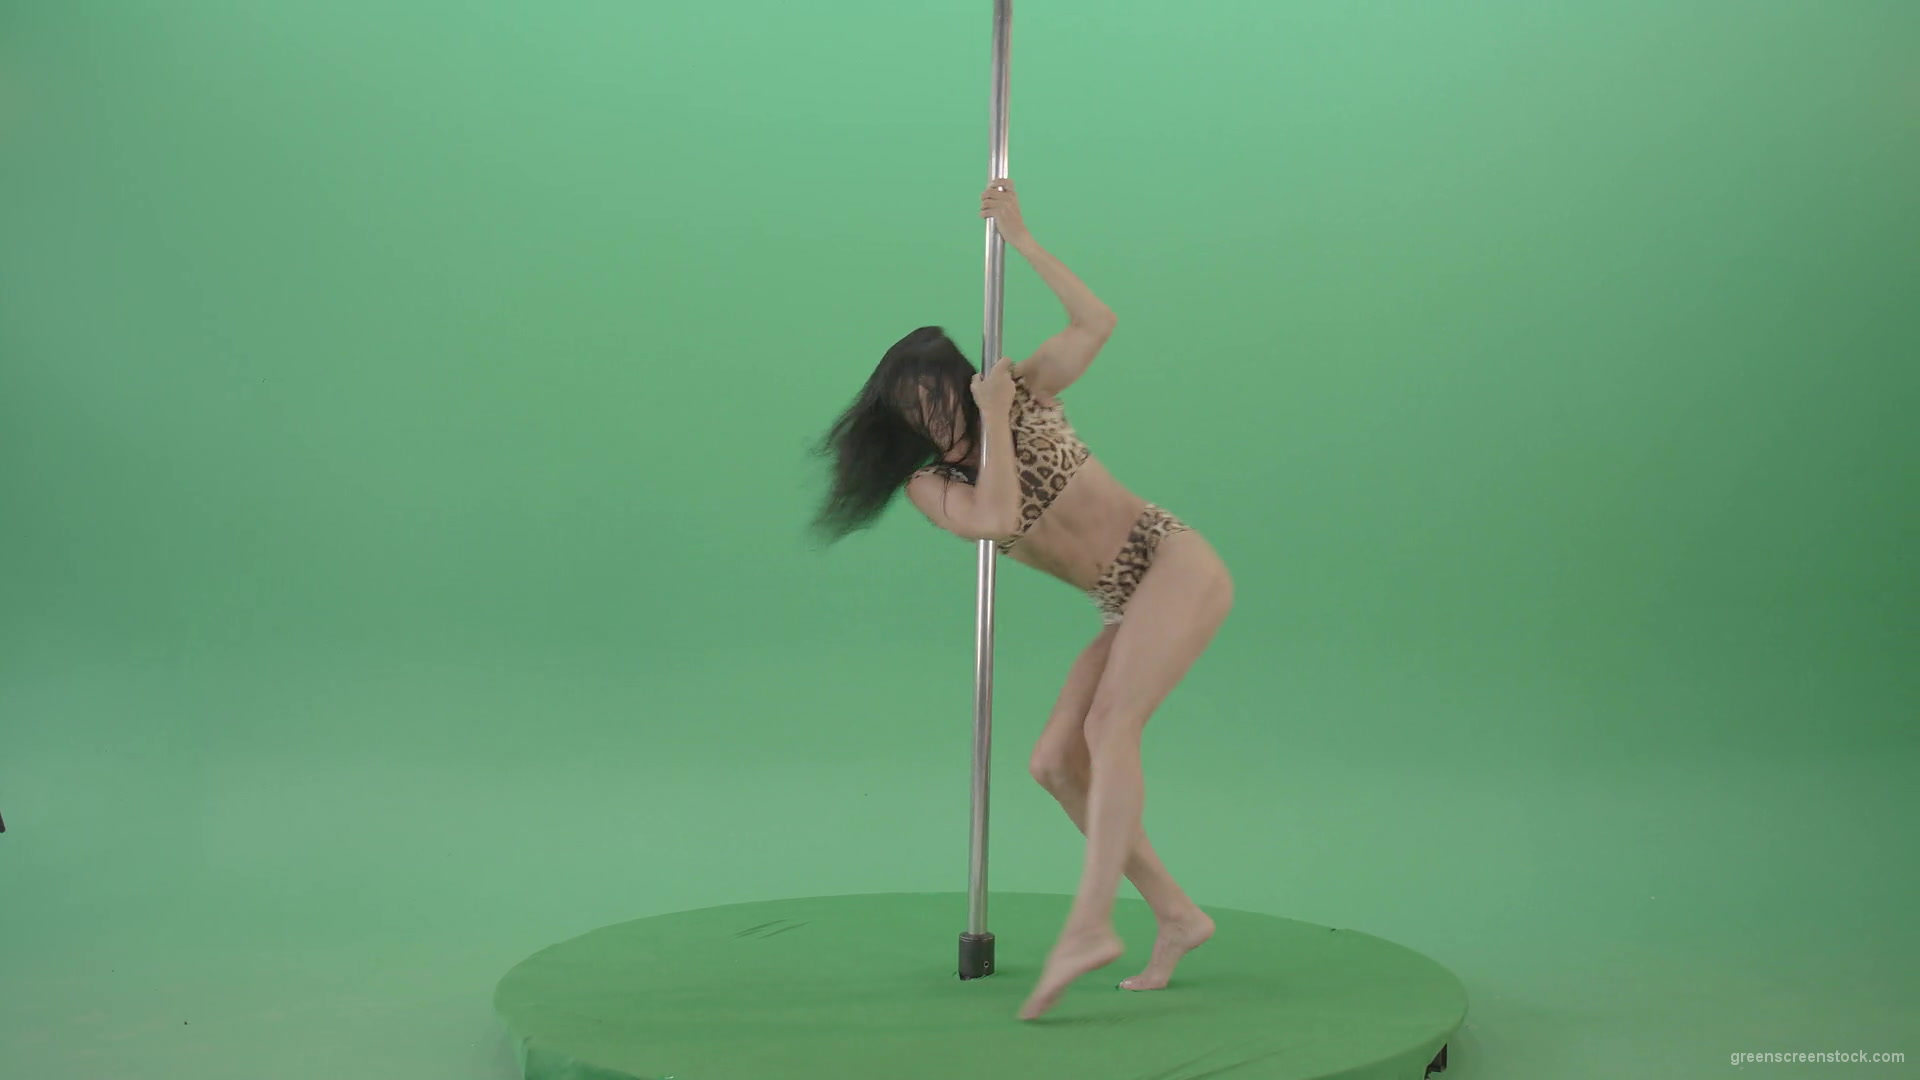 Stripteas-Girl-in-leopard-skin-wear-spinning-on-pilon-dancing-pole-isolated-on-Green-Screen-4K-Video-Footage-1920_009 Green Screen Stock